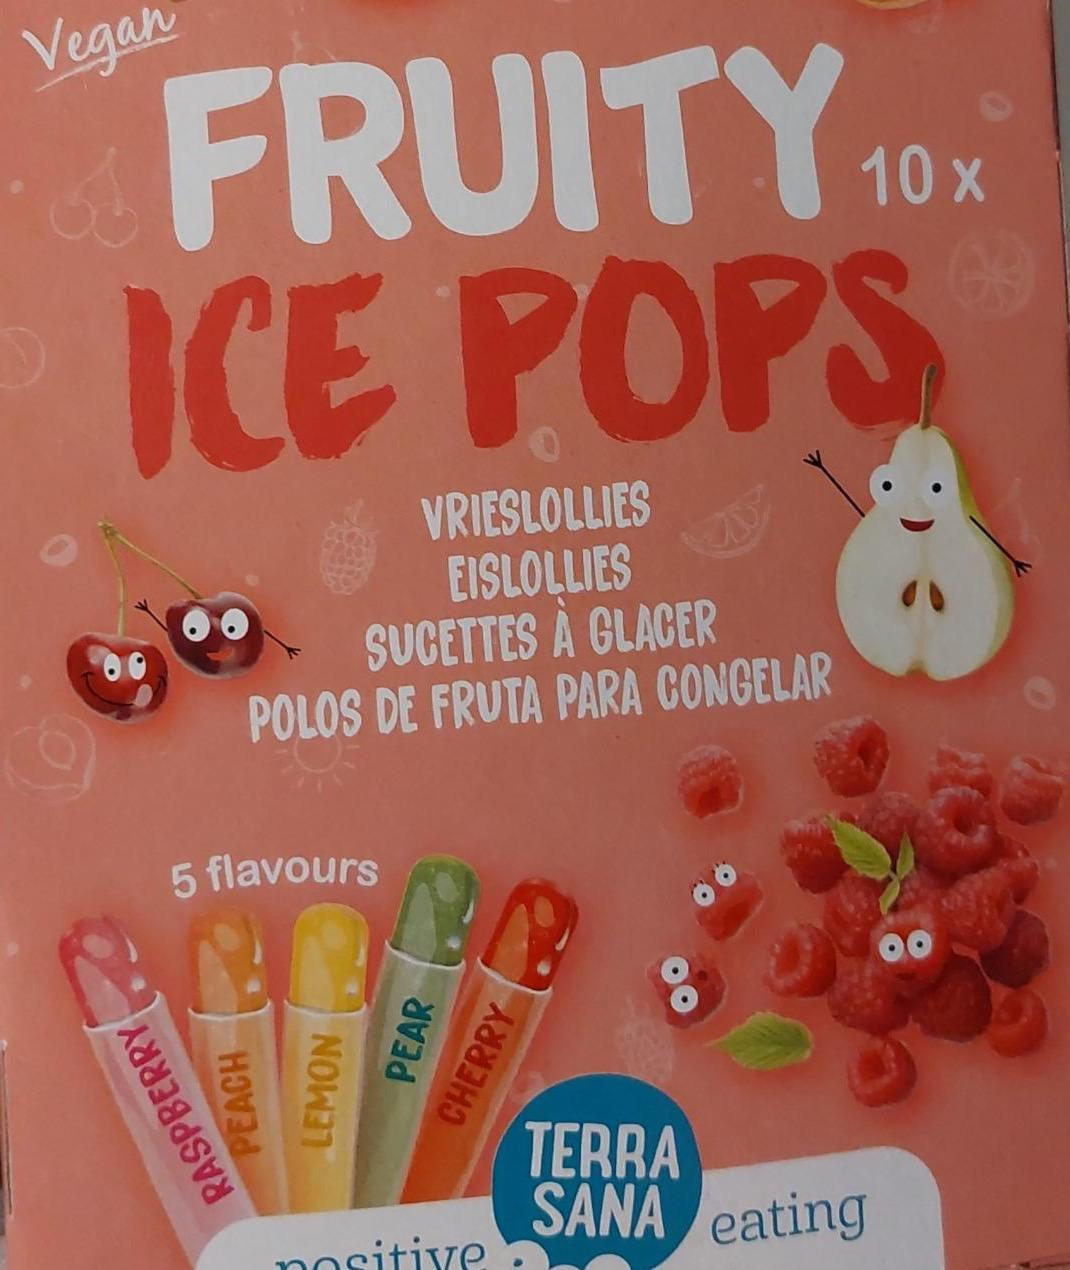 Zdjęcia - Fruity Ice Pops Terra Sana